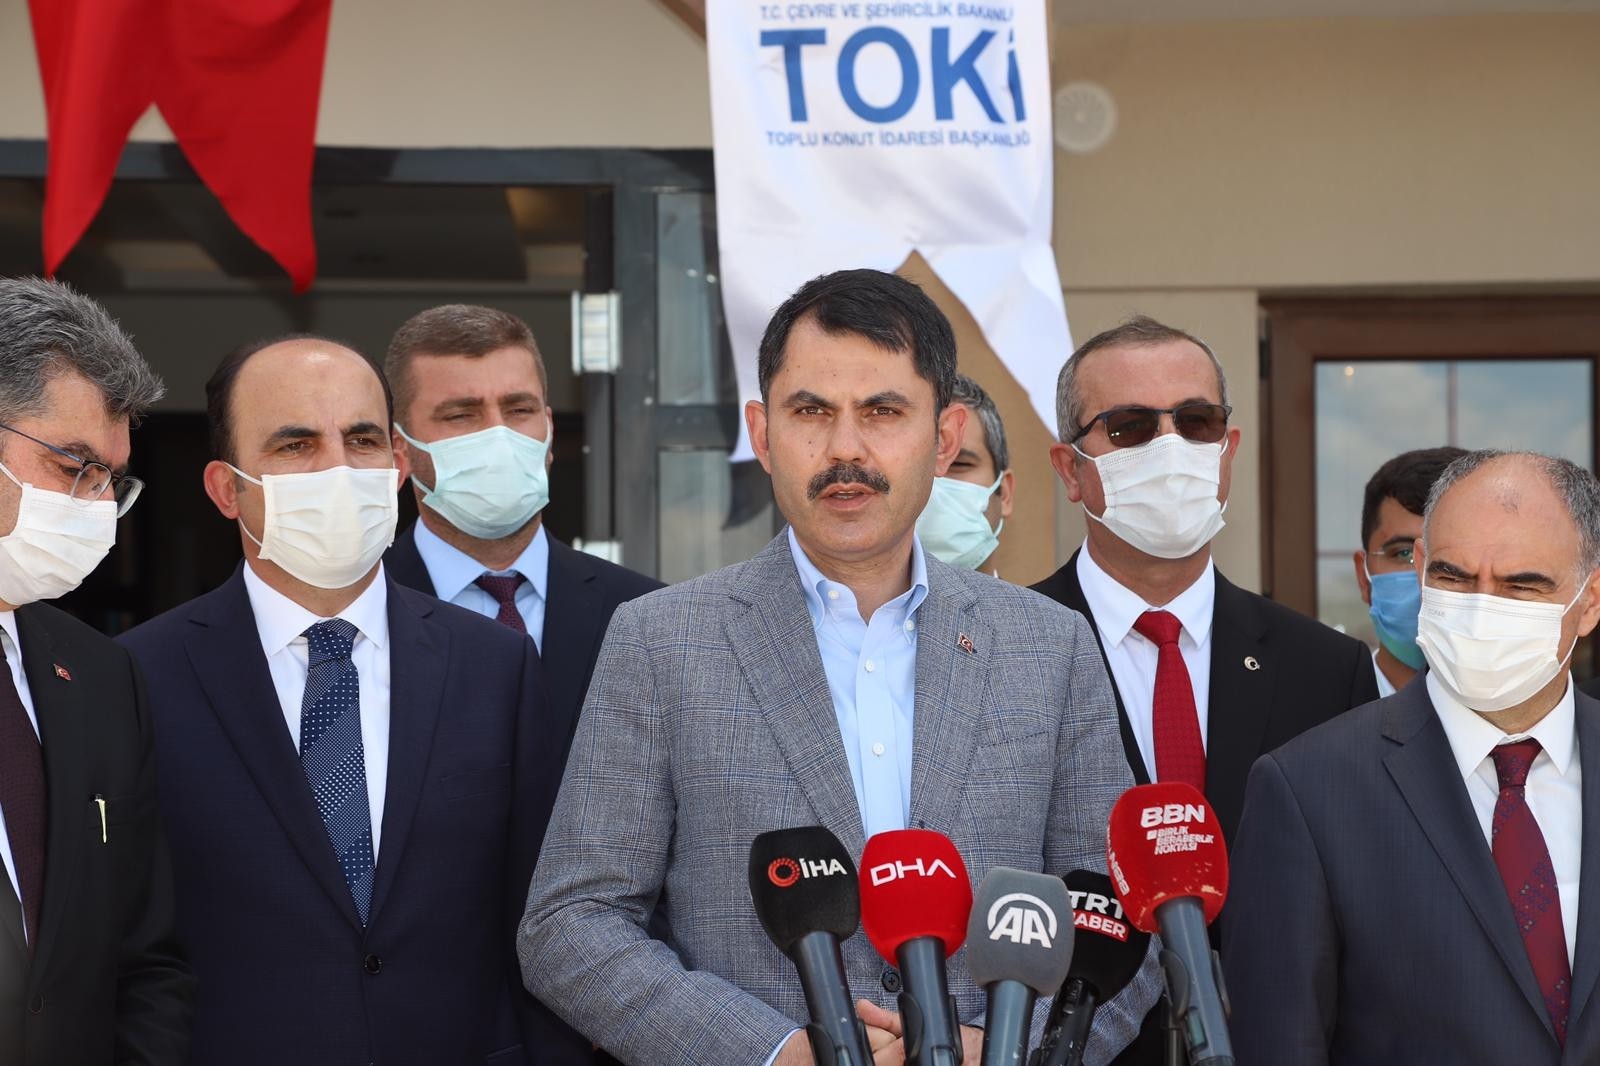 Bakan Kurum: “Amacımız, Marmara’yı ve Türkiye’yi koruyacak adımları kararlı bir şekilde atmak”